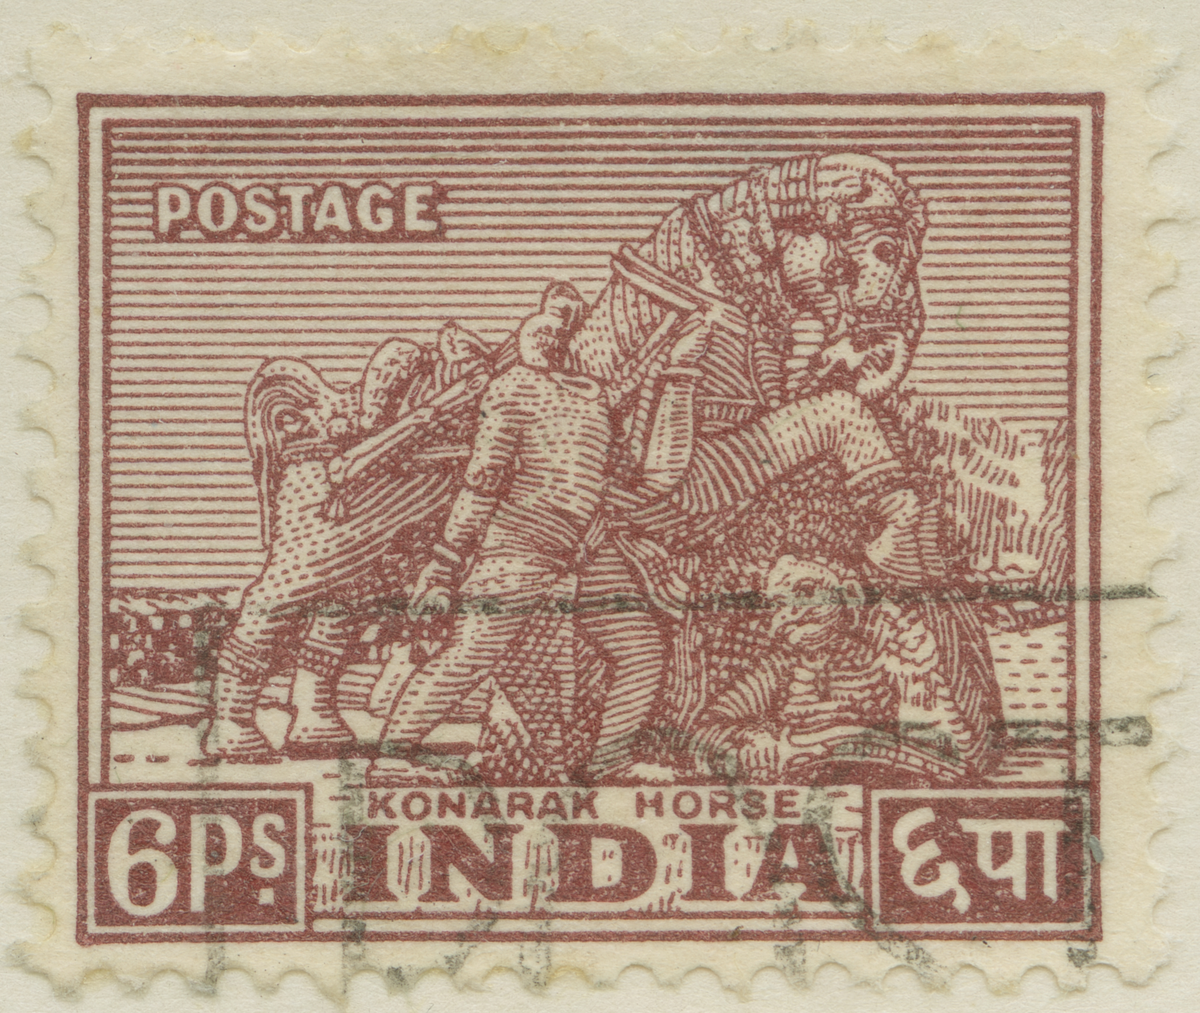 Frimärke ur Gösta Bodmans filatelistiska motivsamling, påbörjad 1950.
Frimärke från Indien, 1949. Motiv av "Konarak" Den historiska Hästen